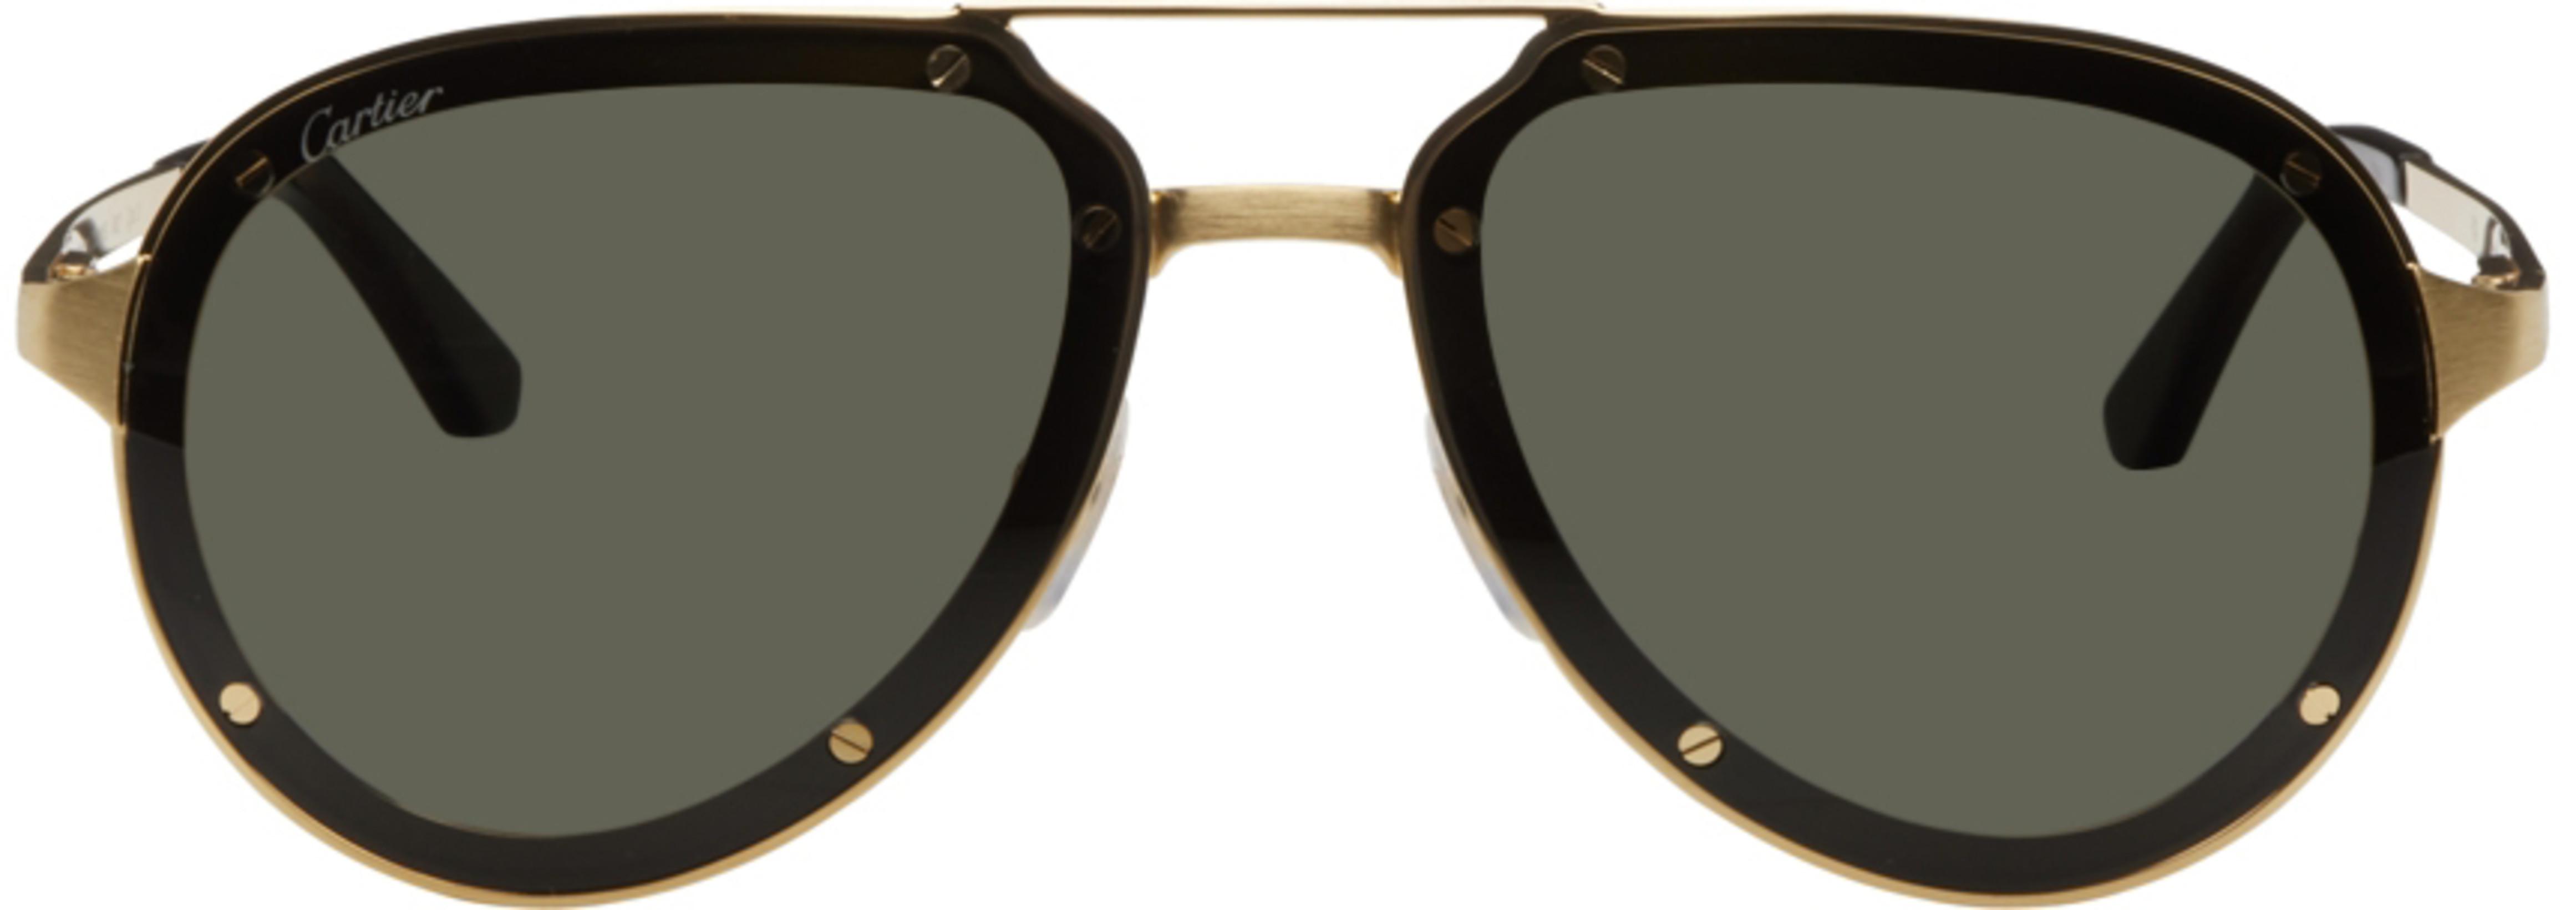 Gold 'Santos de Cartier' Aviator Sunglasses by CARTIER